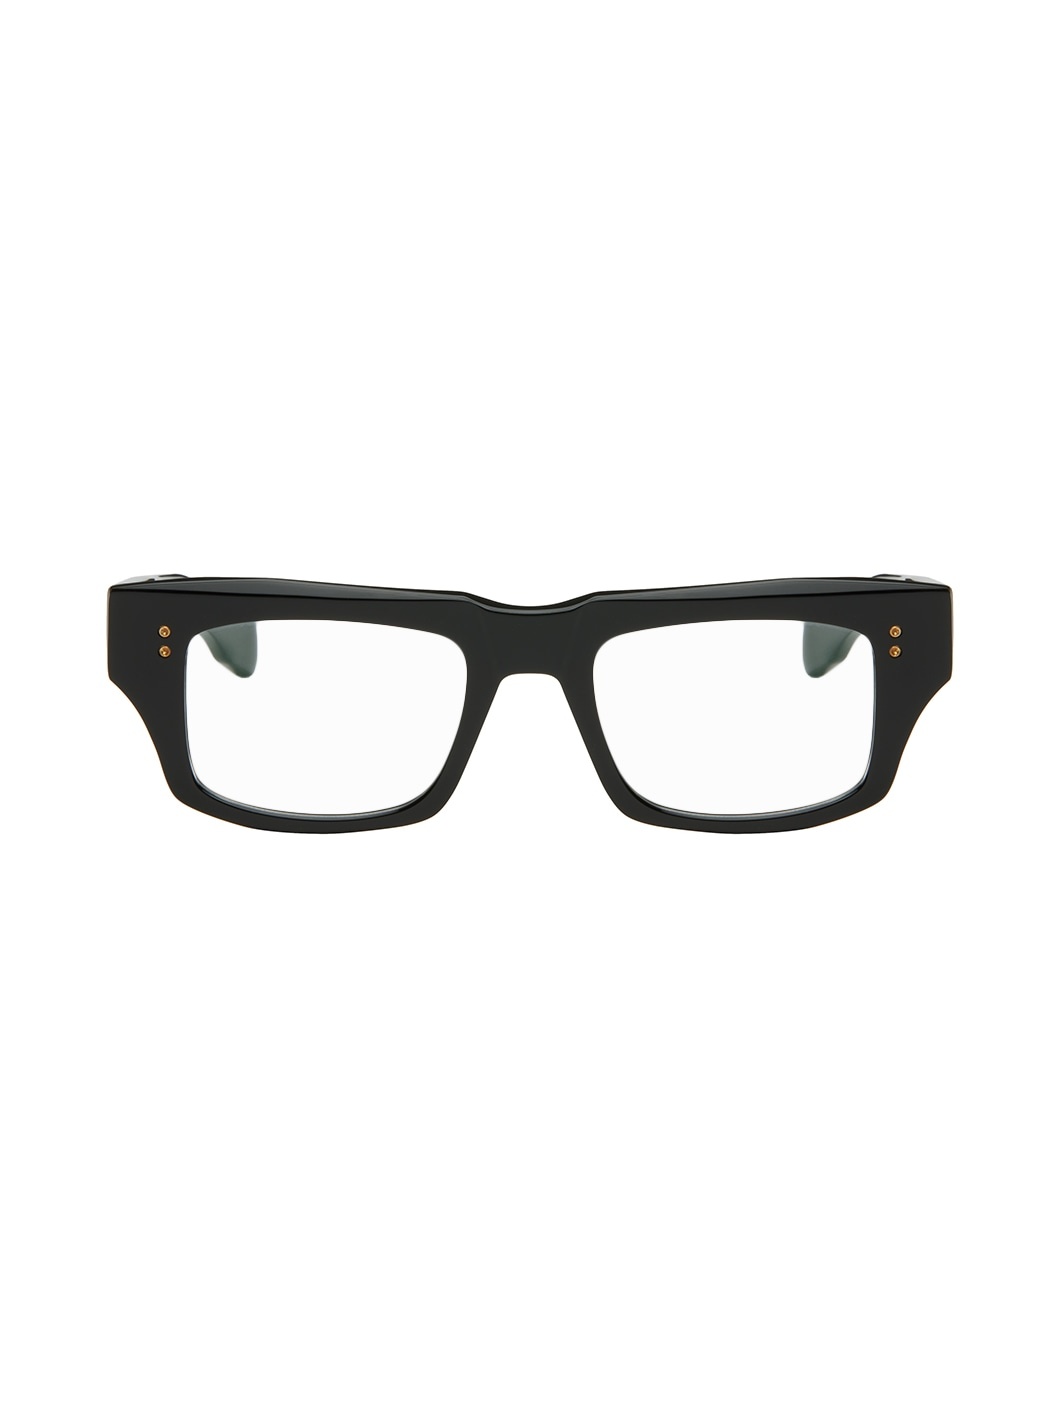 Black Cosmohacker Glasses - 1